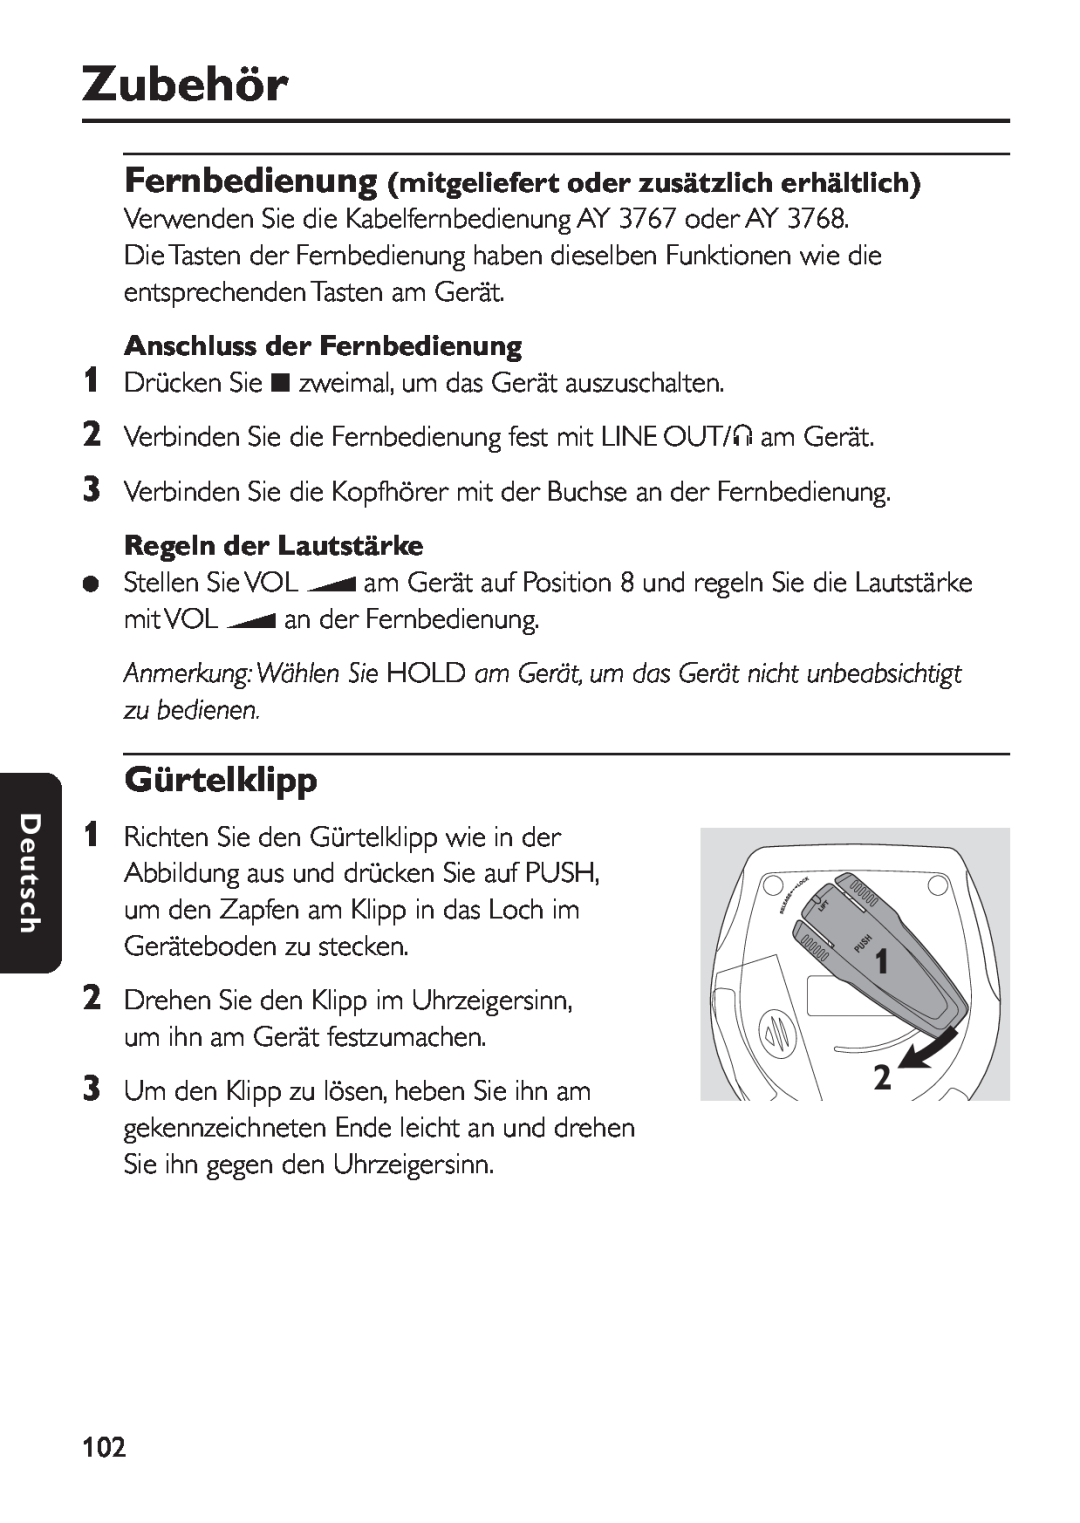 Philips EXP 501/00 manual Gürtelklipp, Fernbedienung mitgeliefert oder zusätzlich erhältlich, Anschluss der Fernbedienung 